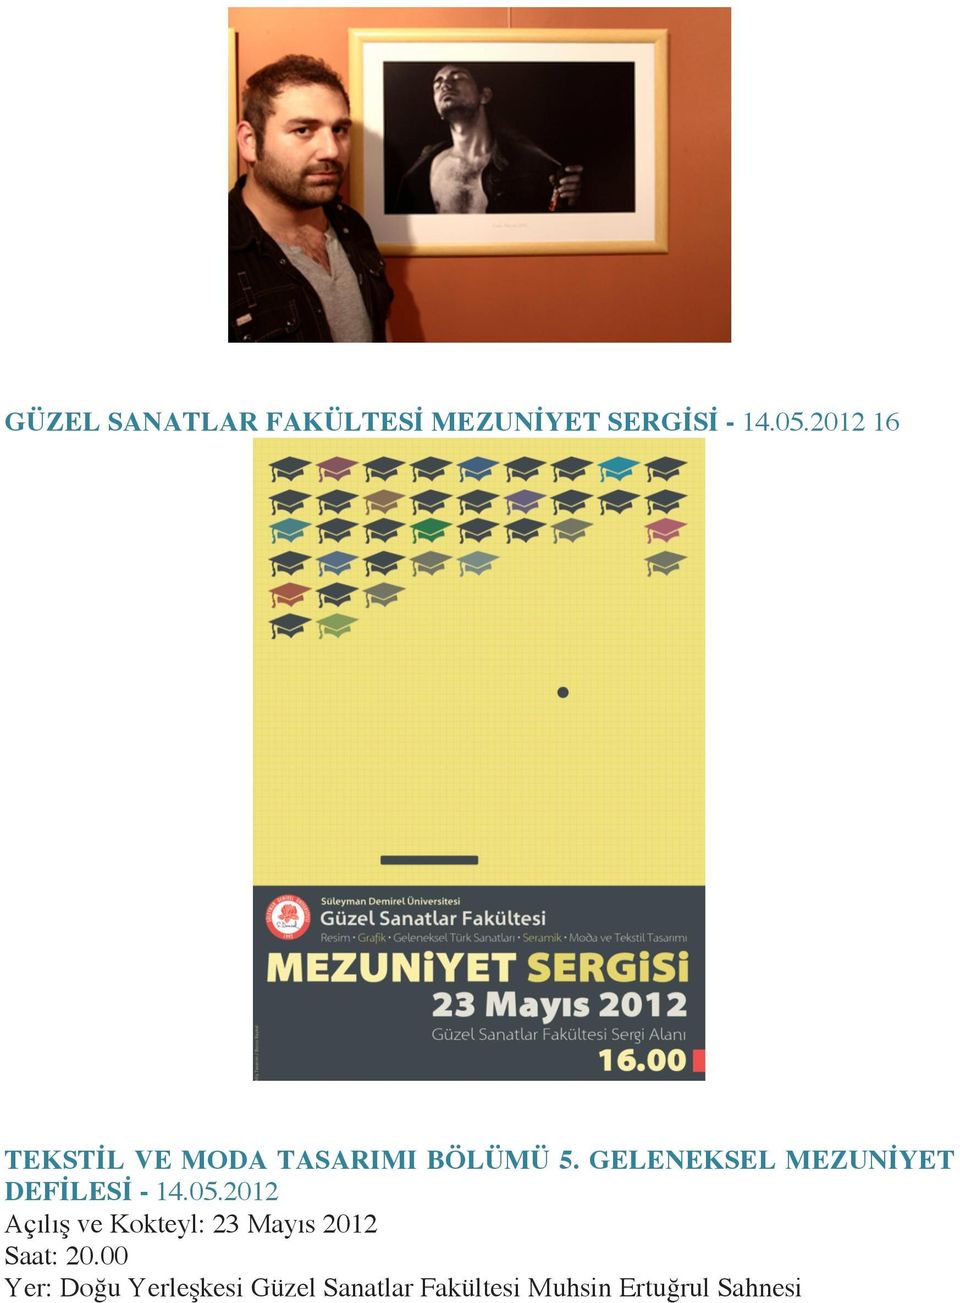 GELENEKSEL MEZUNİYET DEFİLESİ - 14.05.